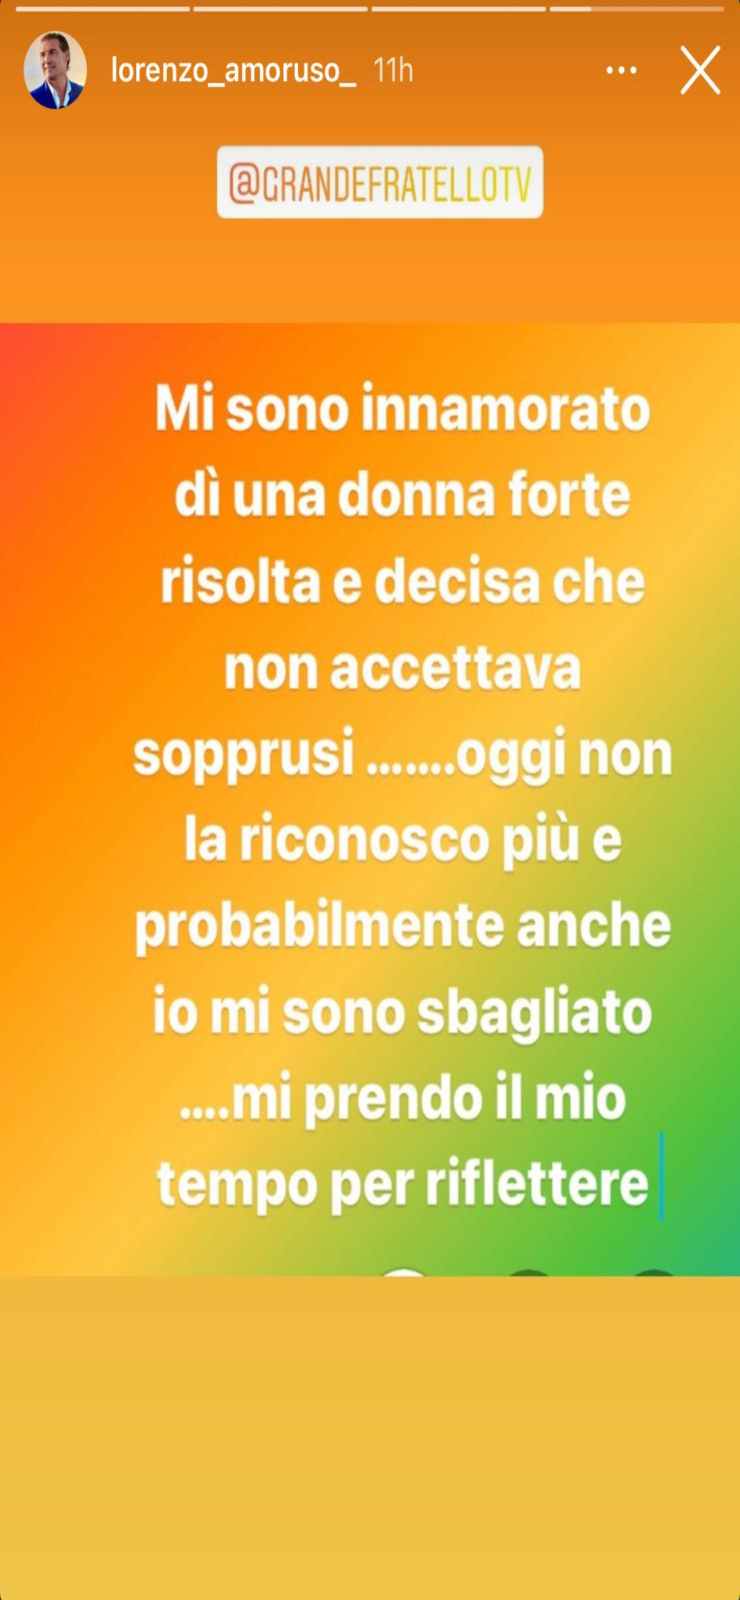 Lorenzo-Amoruso-Instagram-Altranotizia